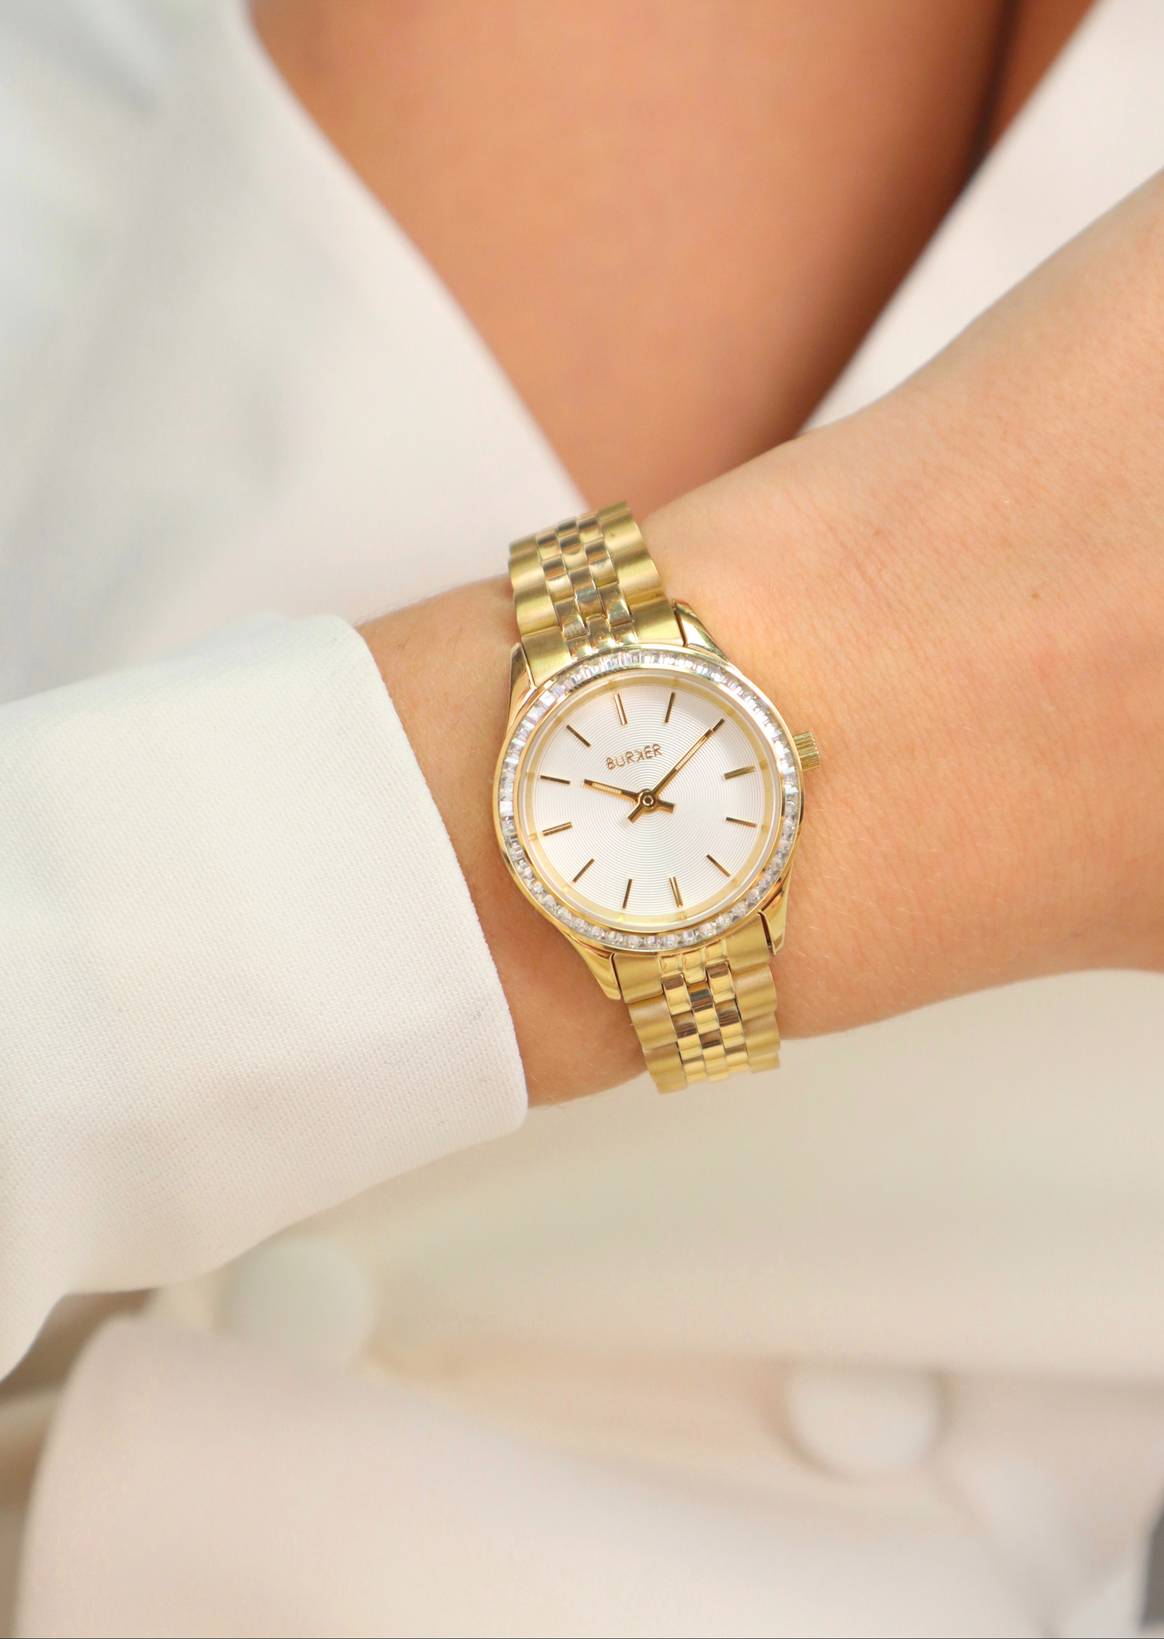 BURKER introduceert de nieuwe ‘Nicky Petite Chic” het horloge wat je pols een extra touch geeft.